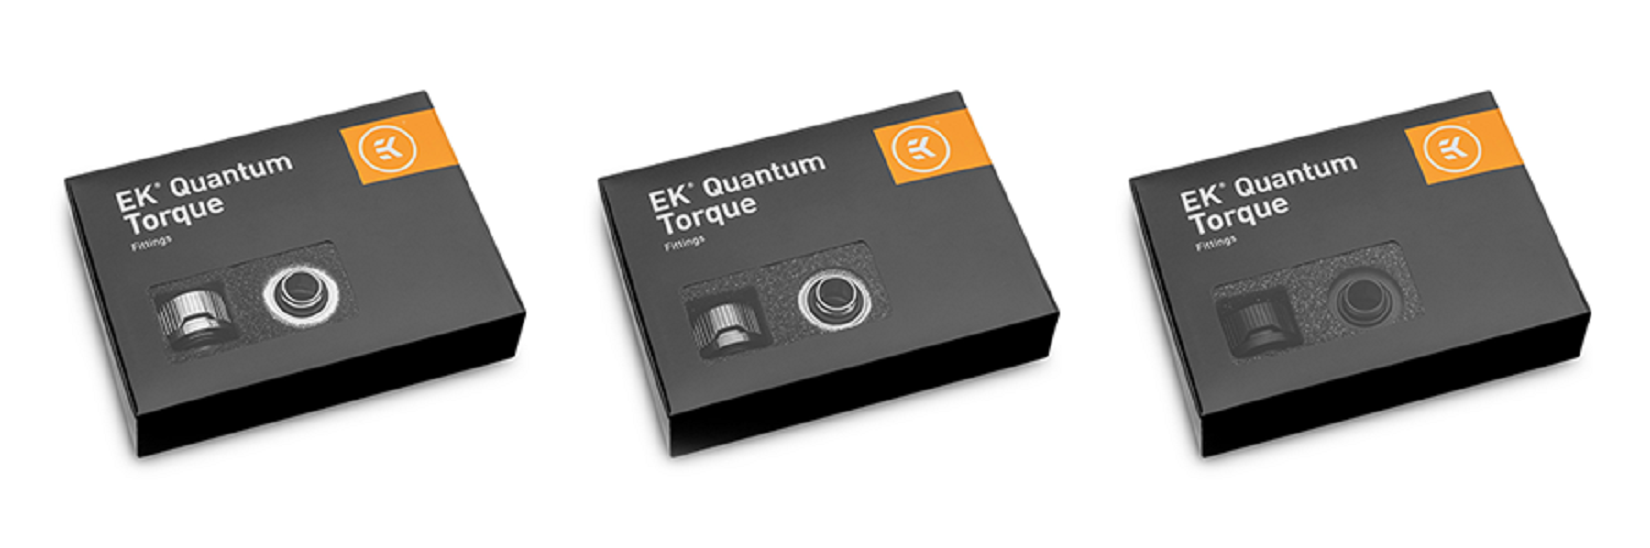 EK-Quantum Torque 6-Pack STC 10/13 - Nickel.1